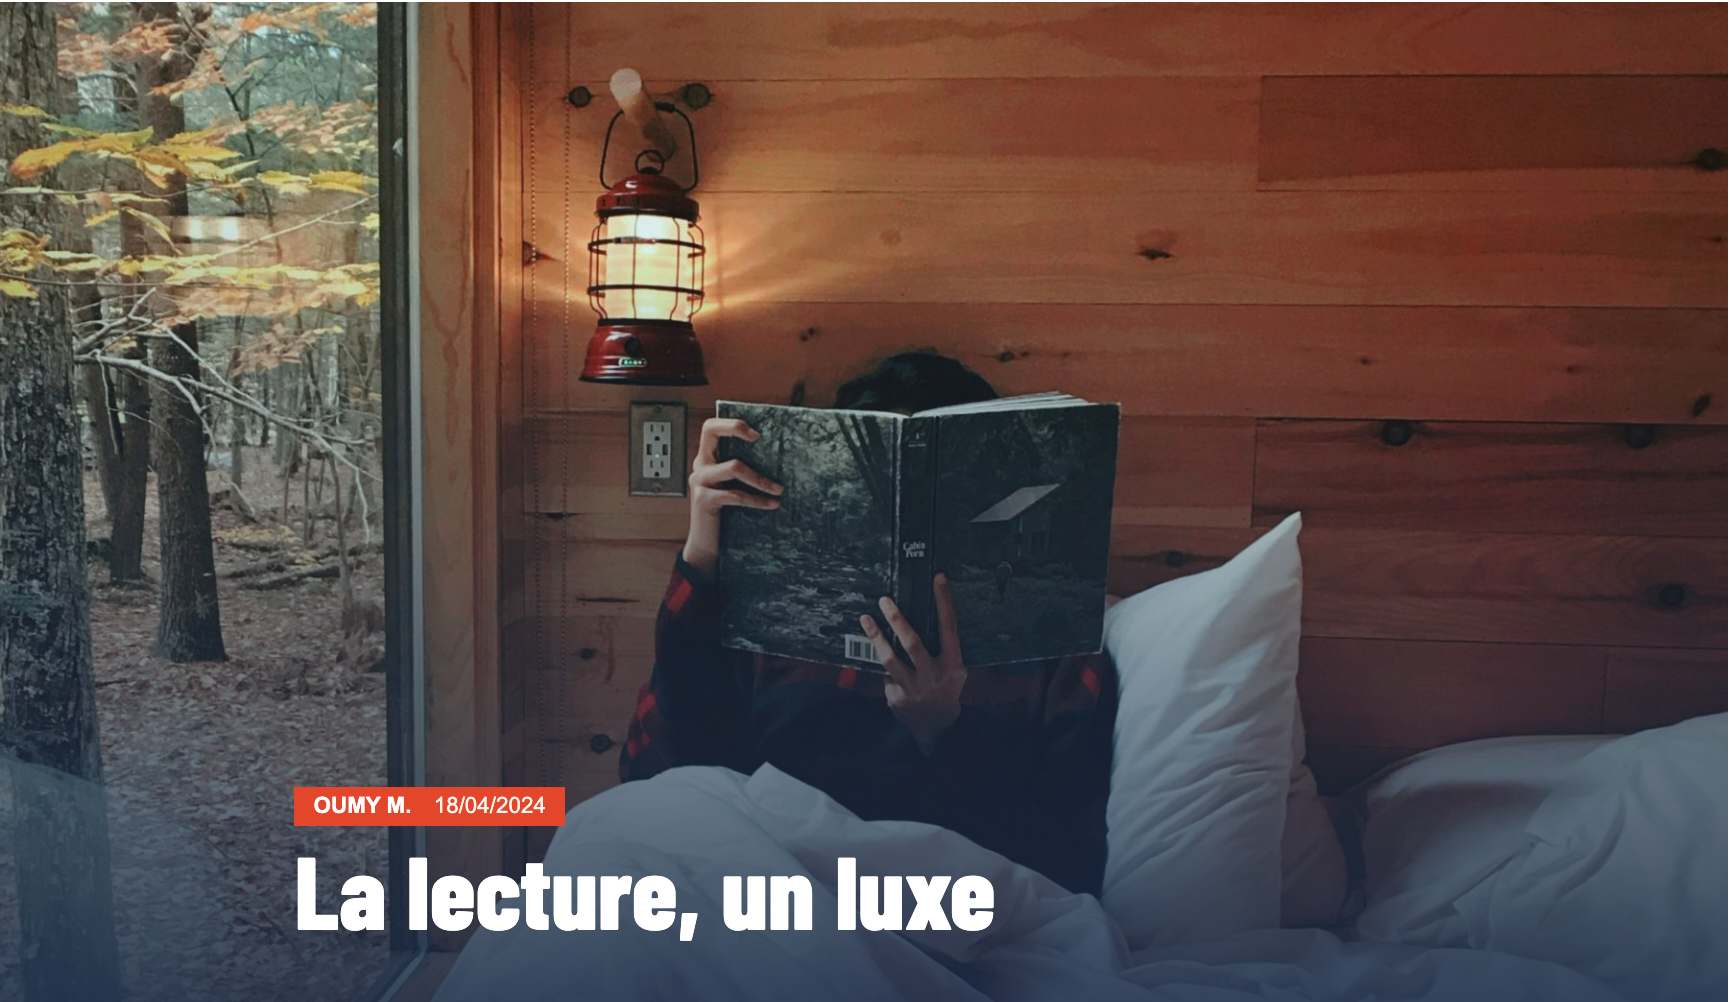 Capture d'écran de l'article "La lecture, un luxe". Une jeune fille est assise sur un lit, avec un livre ouvert qui lui cache le visage.